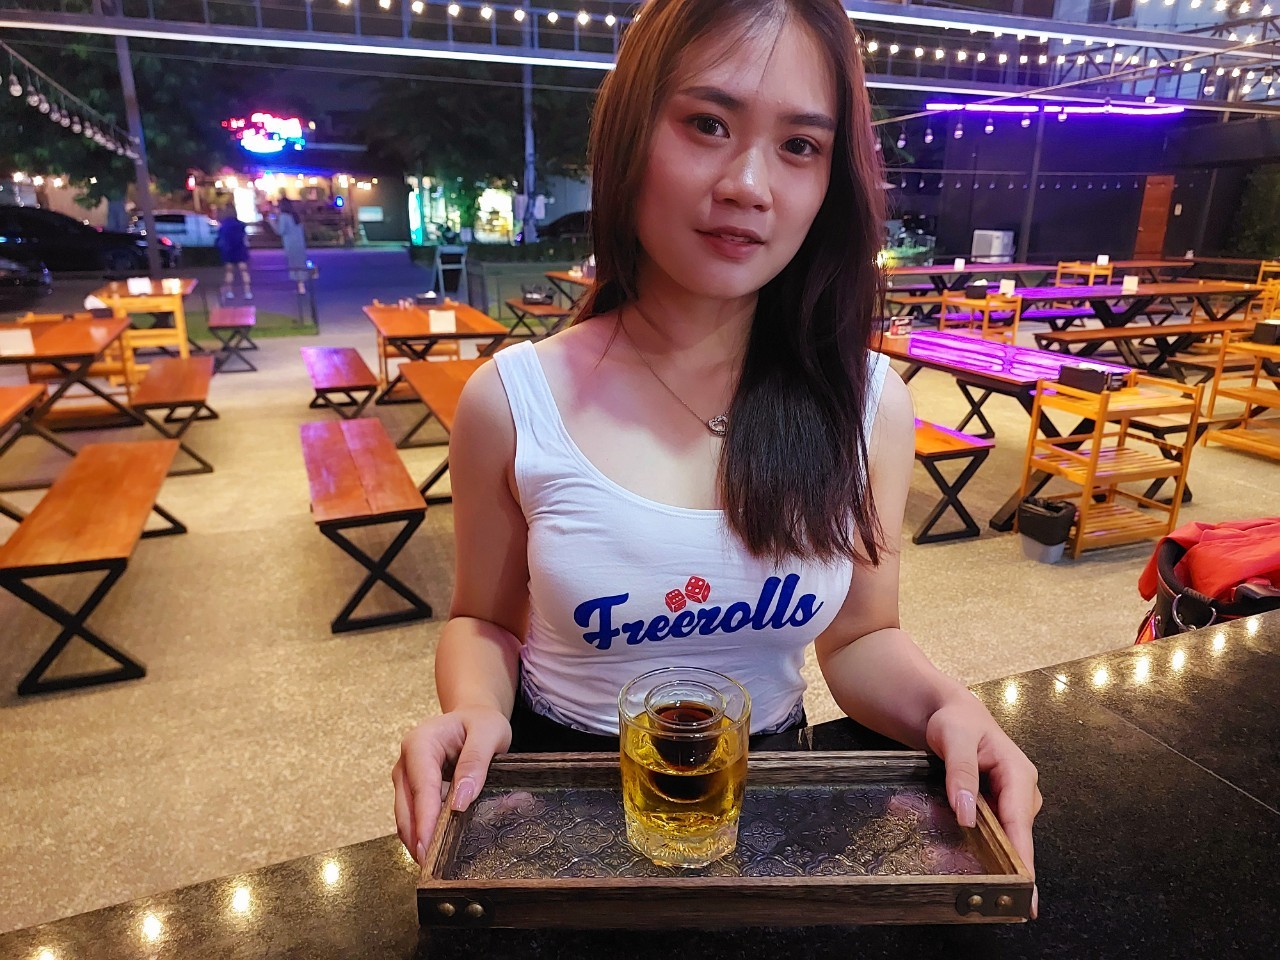 صنابير صب البيرة الآلية تعتبر إضافة ممتعة لحدثك في تشيانغ ماي